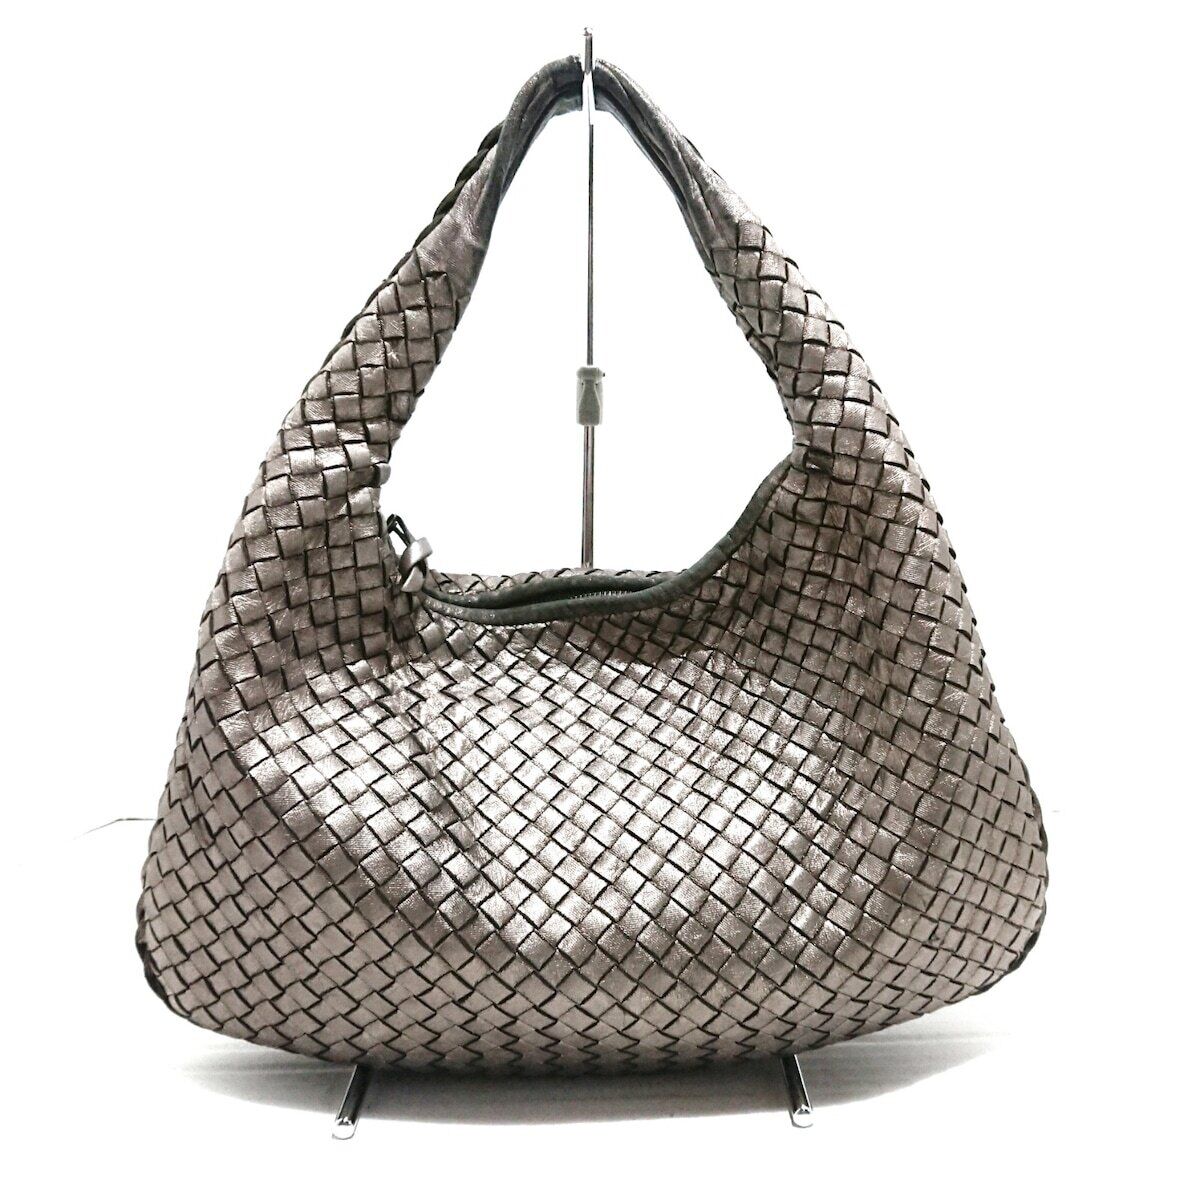 Auth BOTTEGA VENETA Medium Veneta bag 115653 Bronze Leather - Handbag